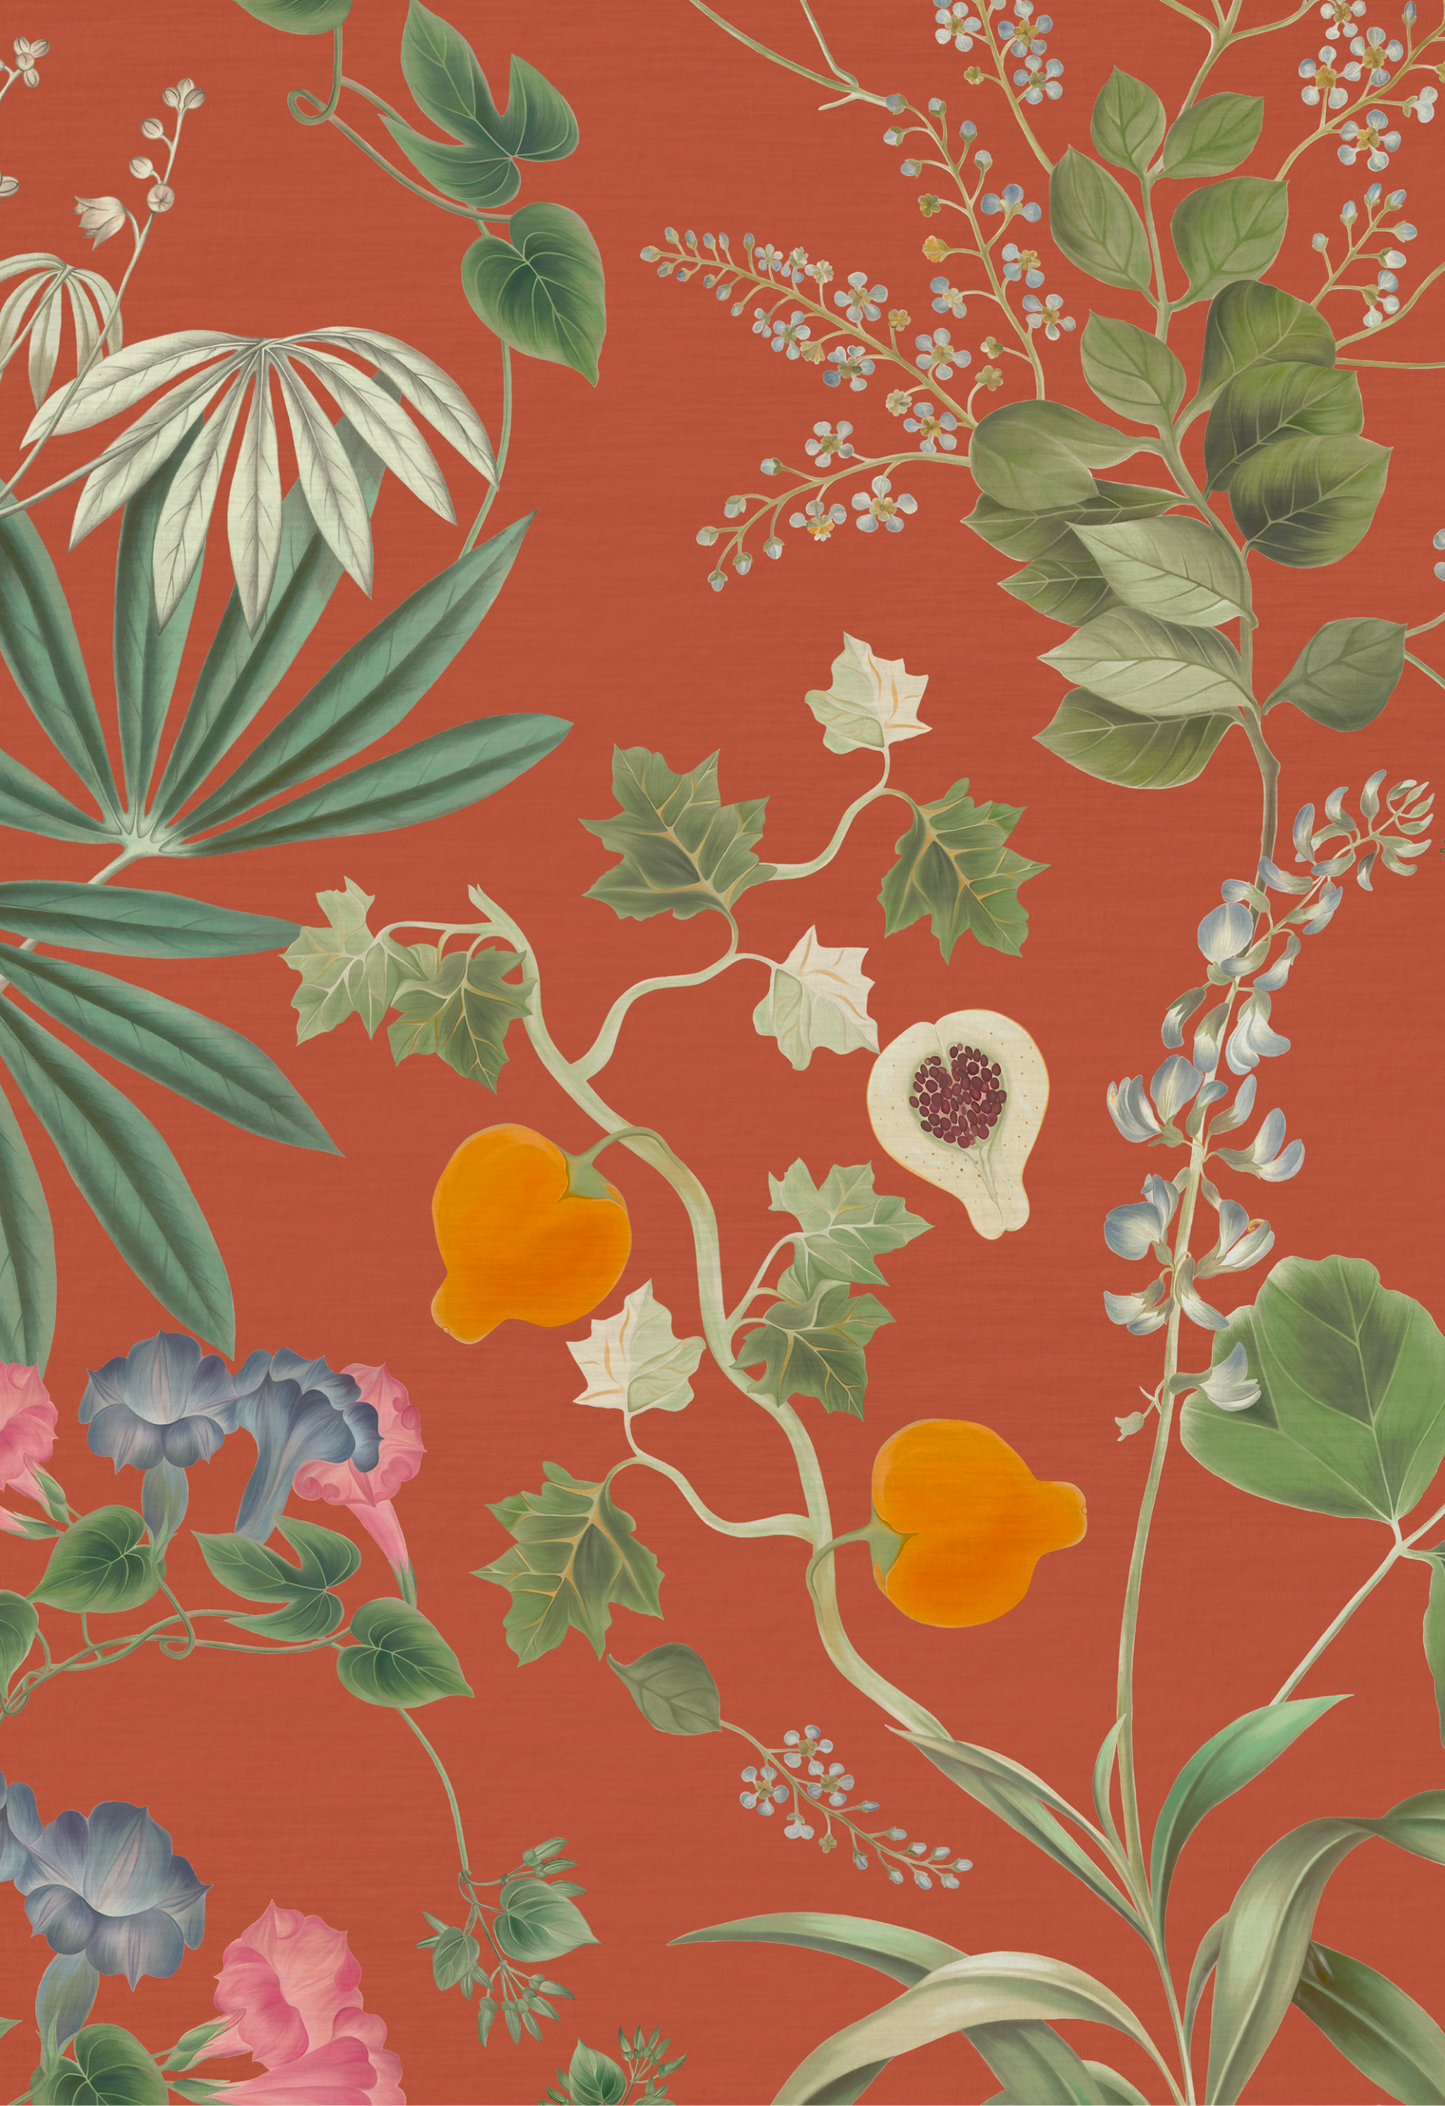 Vintage inspired florals and fruit on orange ground of Deus ex Gardenia's Eden Wallpaper in Marigold.